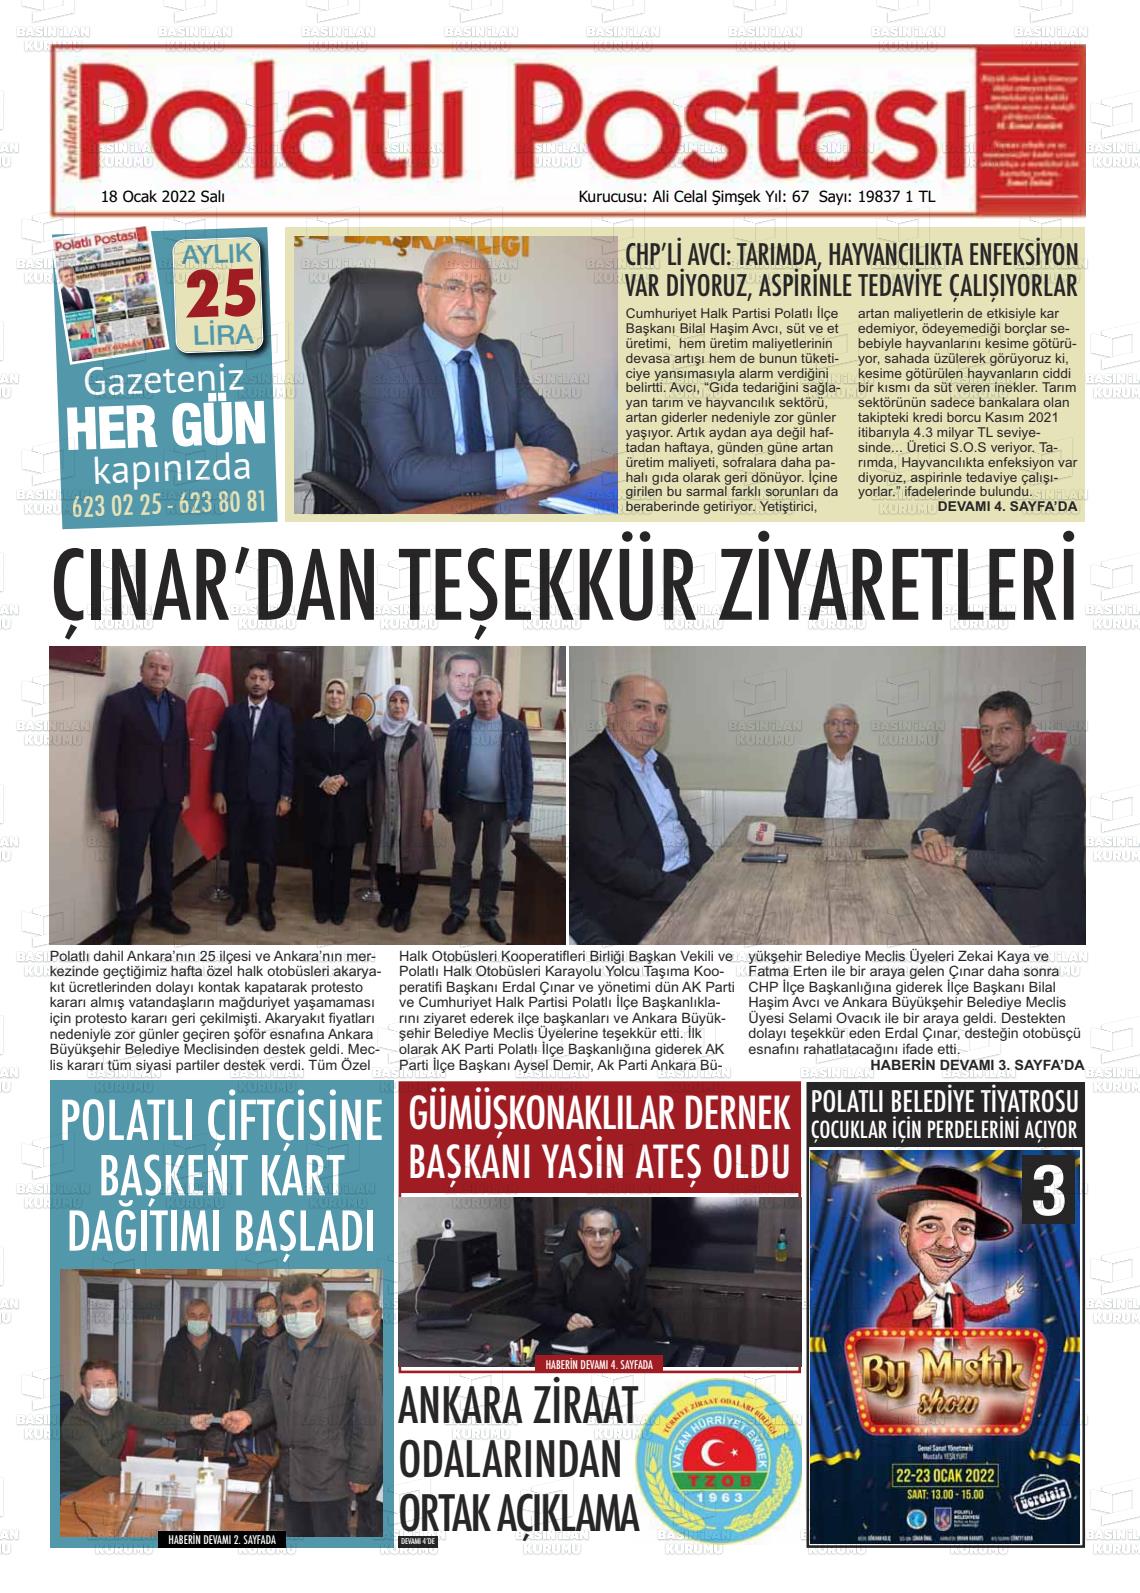 18 Ocak 2022 Polatlı Postası Gazete Manşeti